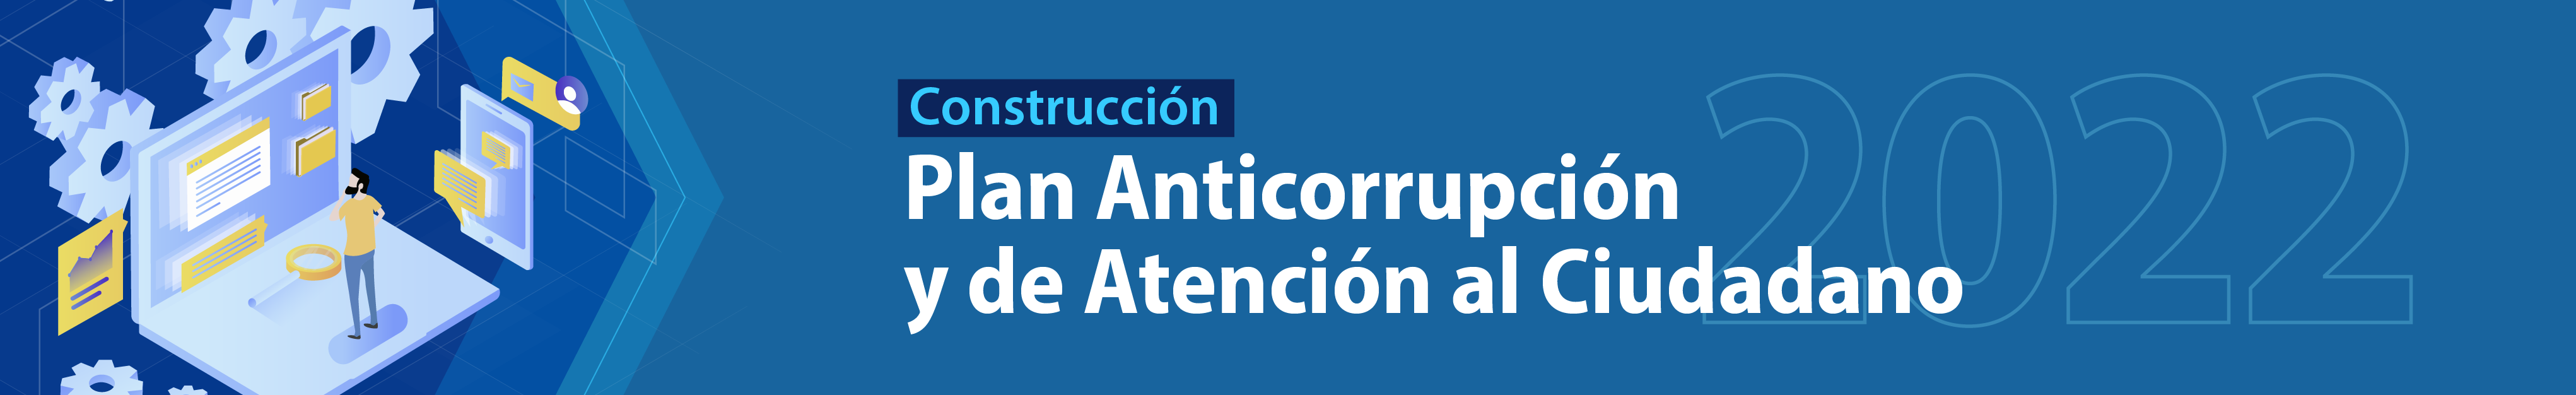 Construcción Plan Anticorrupció y de Atención al Ciudadano 2022